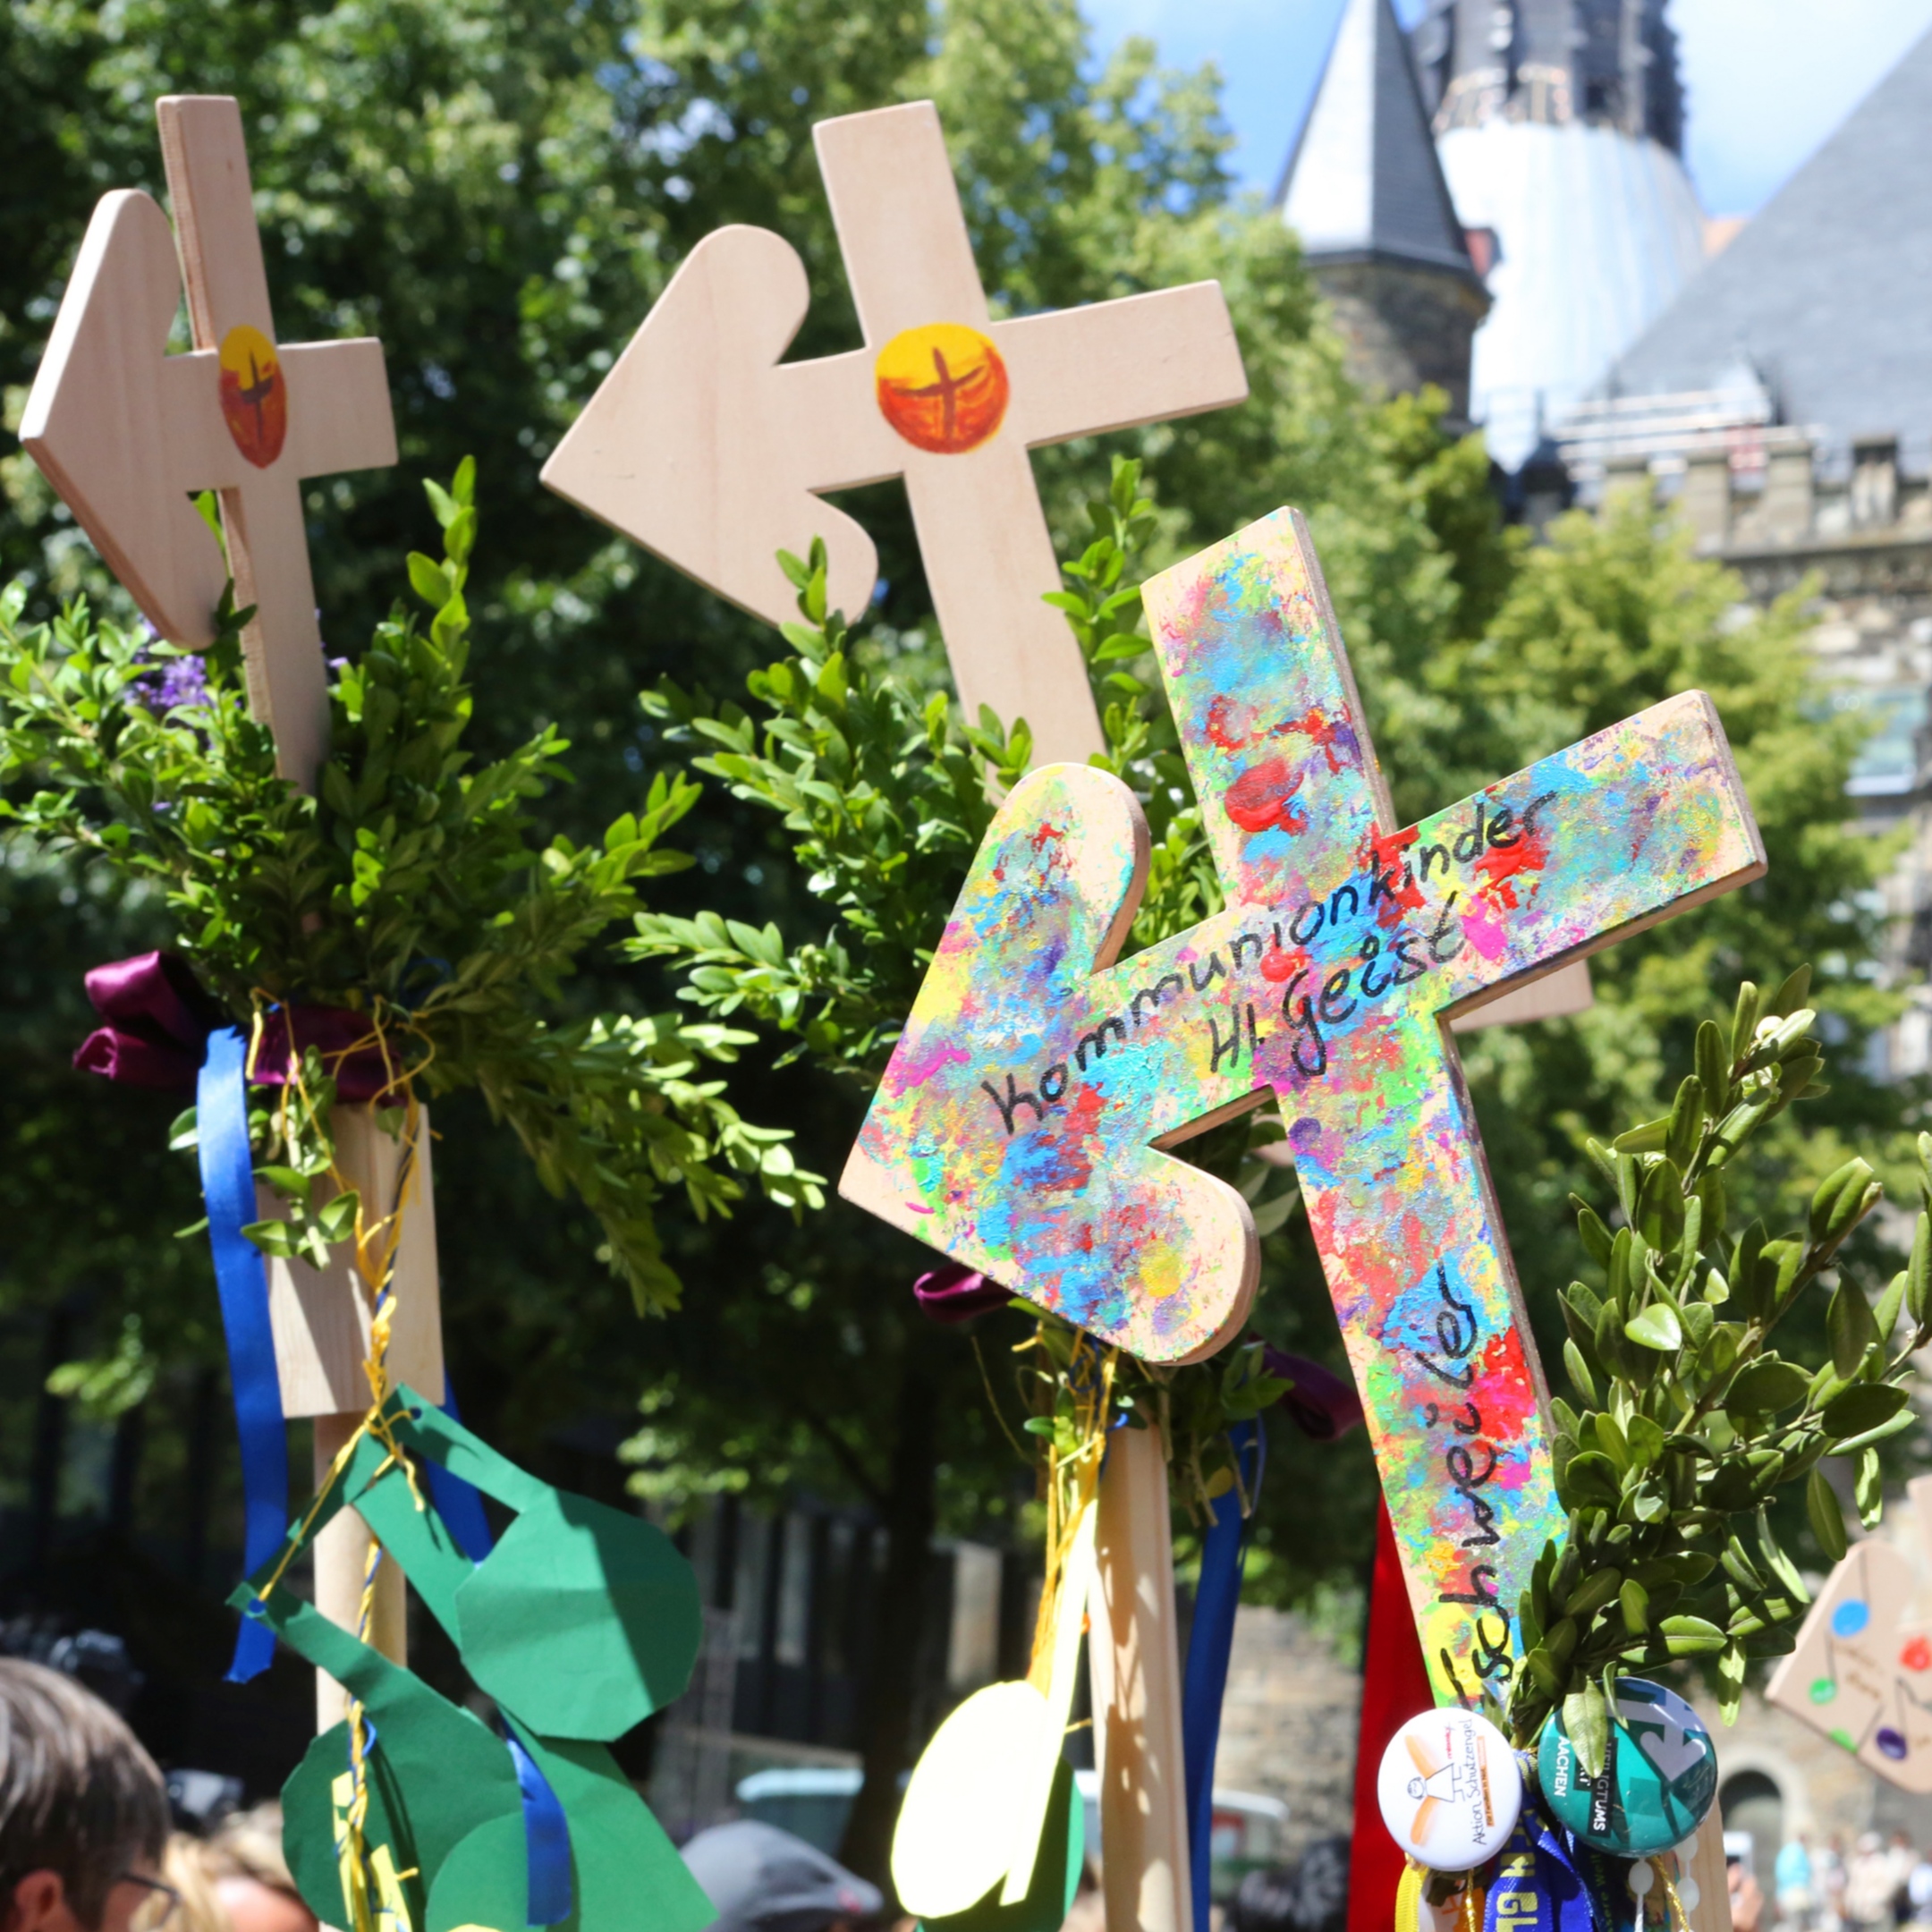 Bunt und vielfältig: So sahen die Pilgerkreuze bei der Heiligtumsfahrt Aachen 2014 aus – und so sollen sie auch 2021 wieder aussehen.